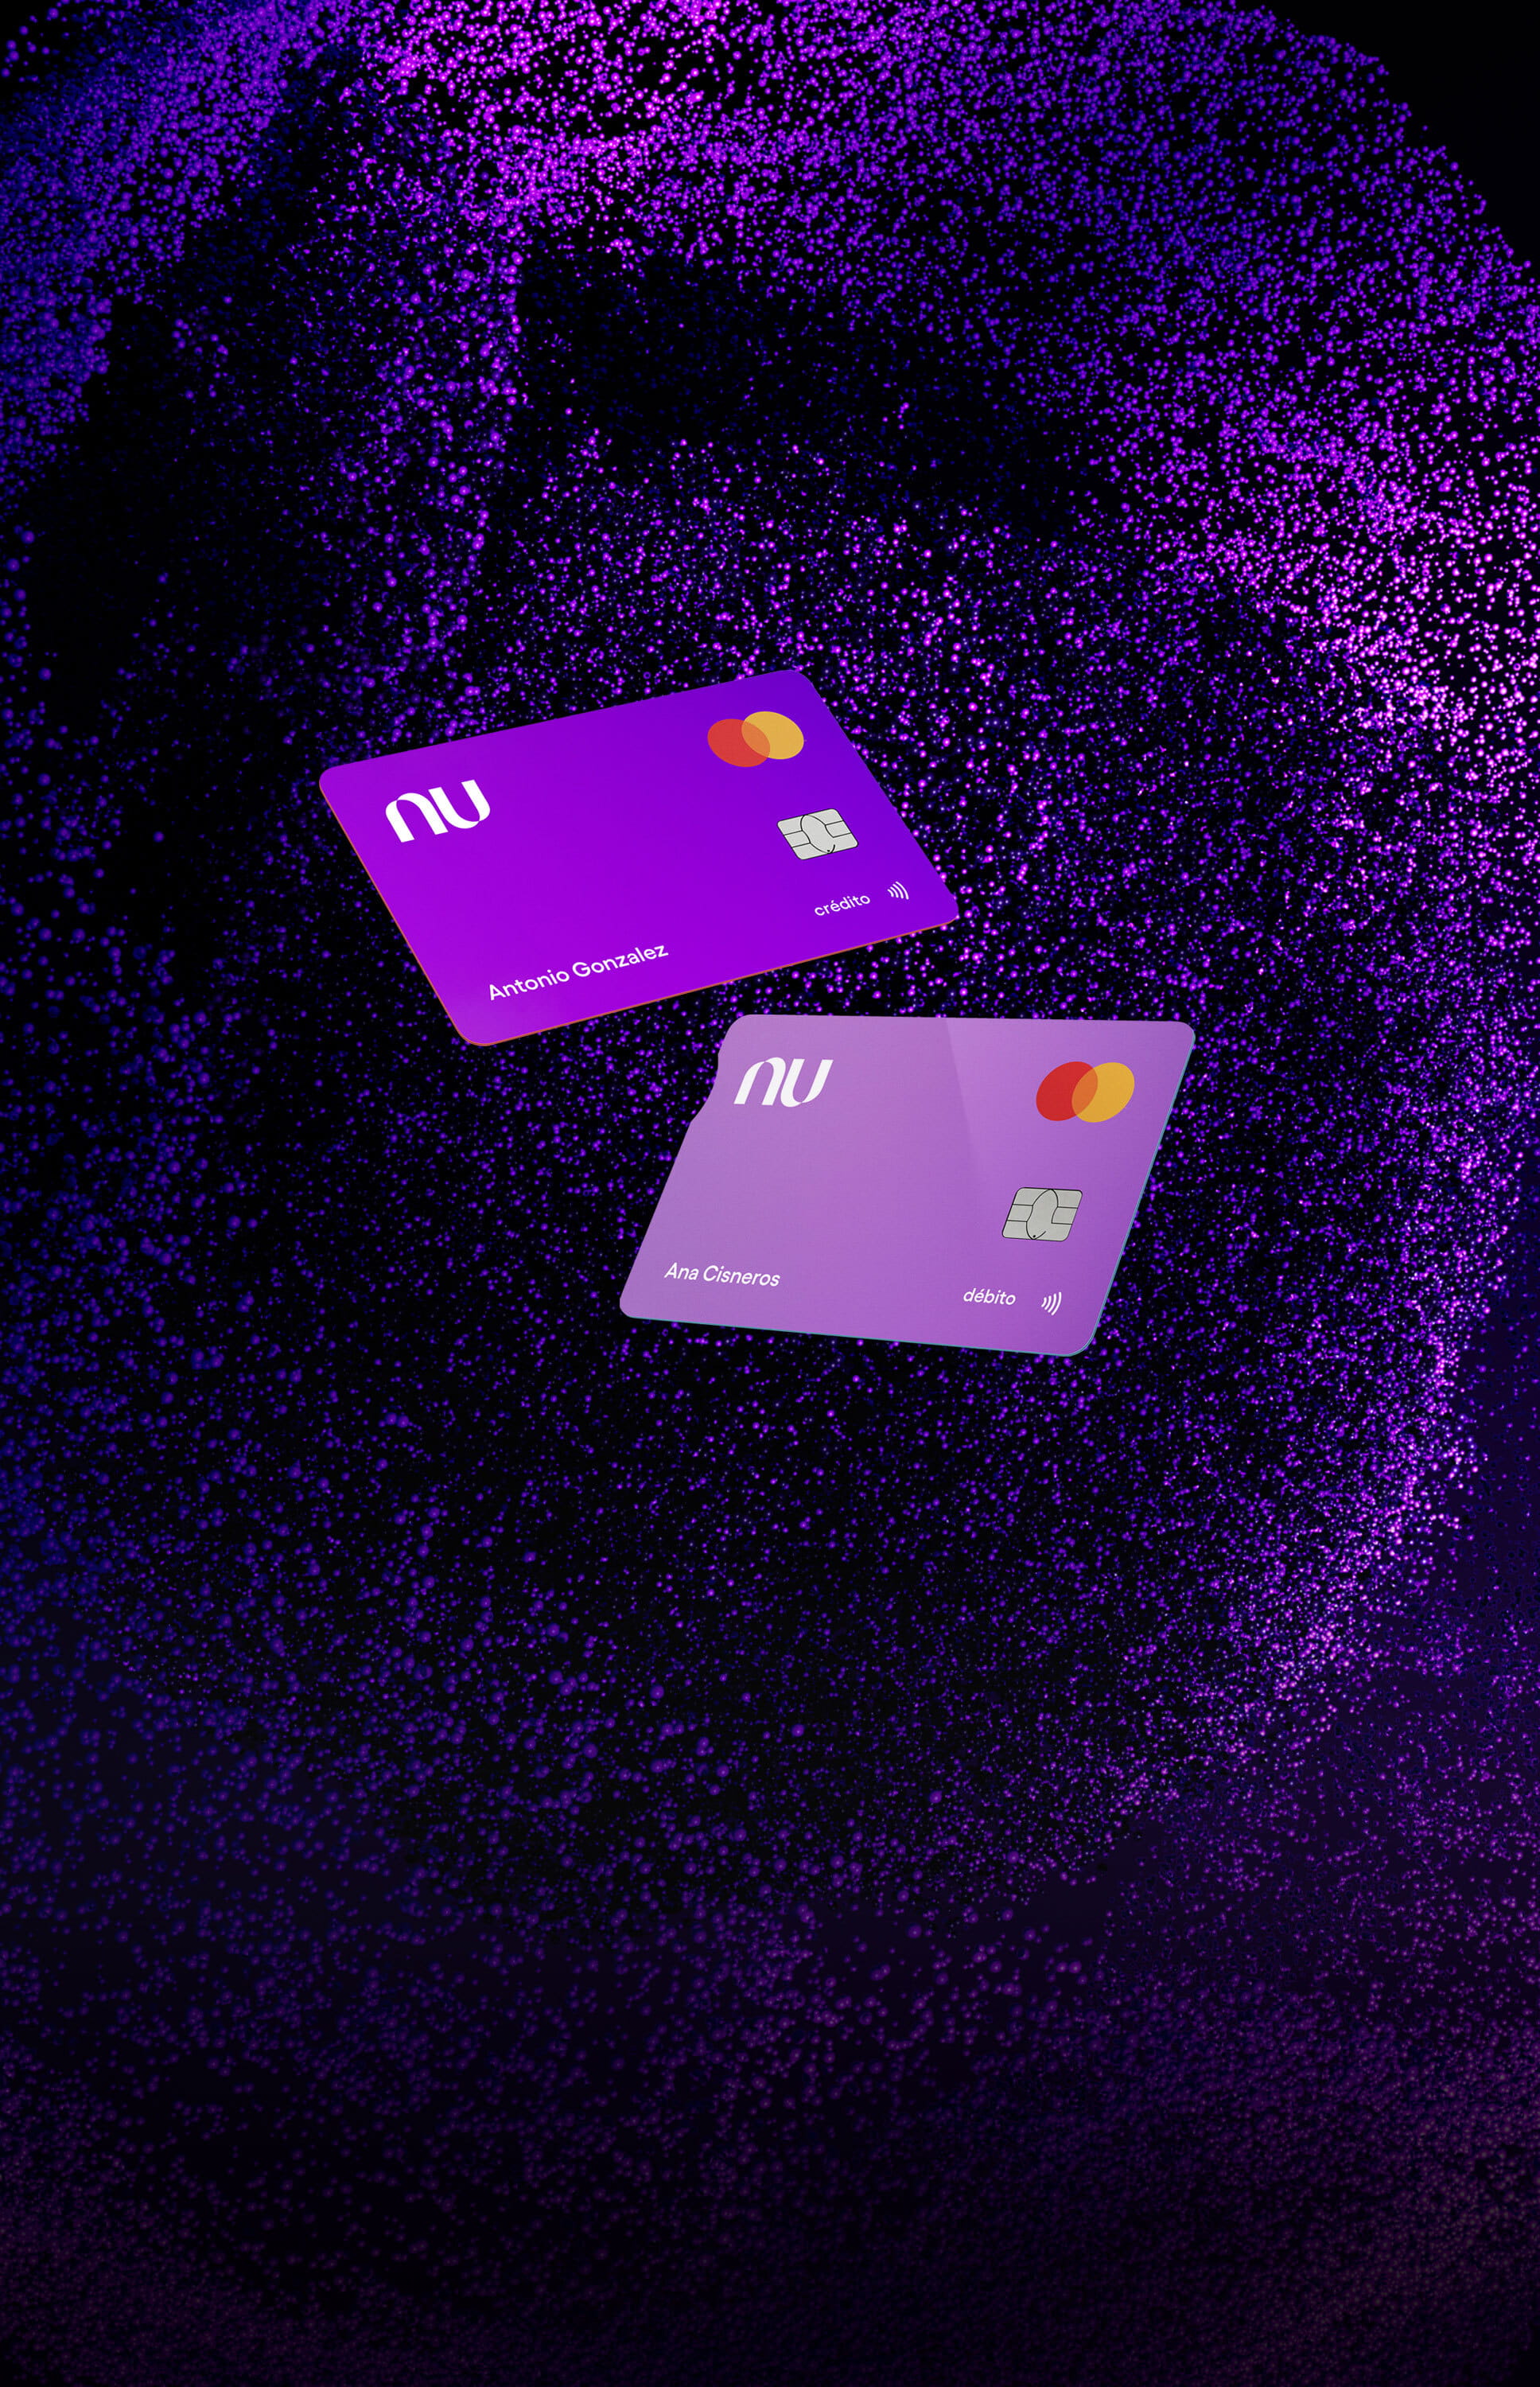 Imagen de dos tarjetas moradas flotando con un fondo violeta